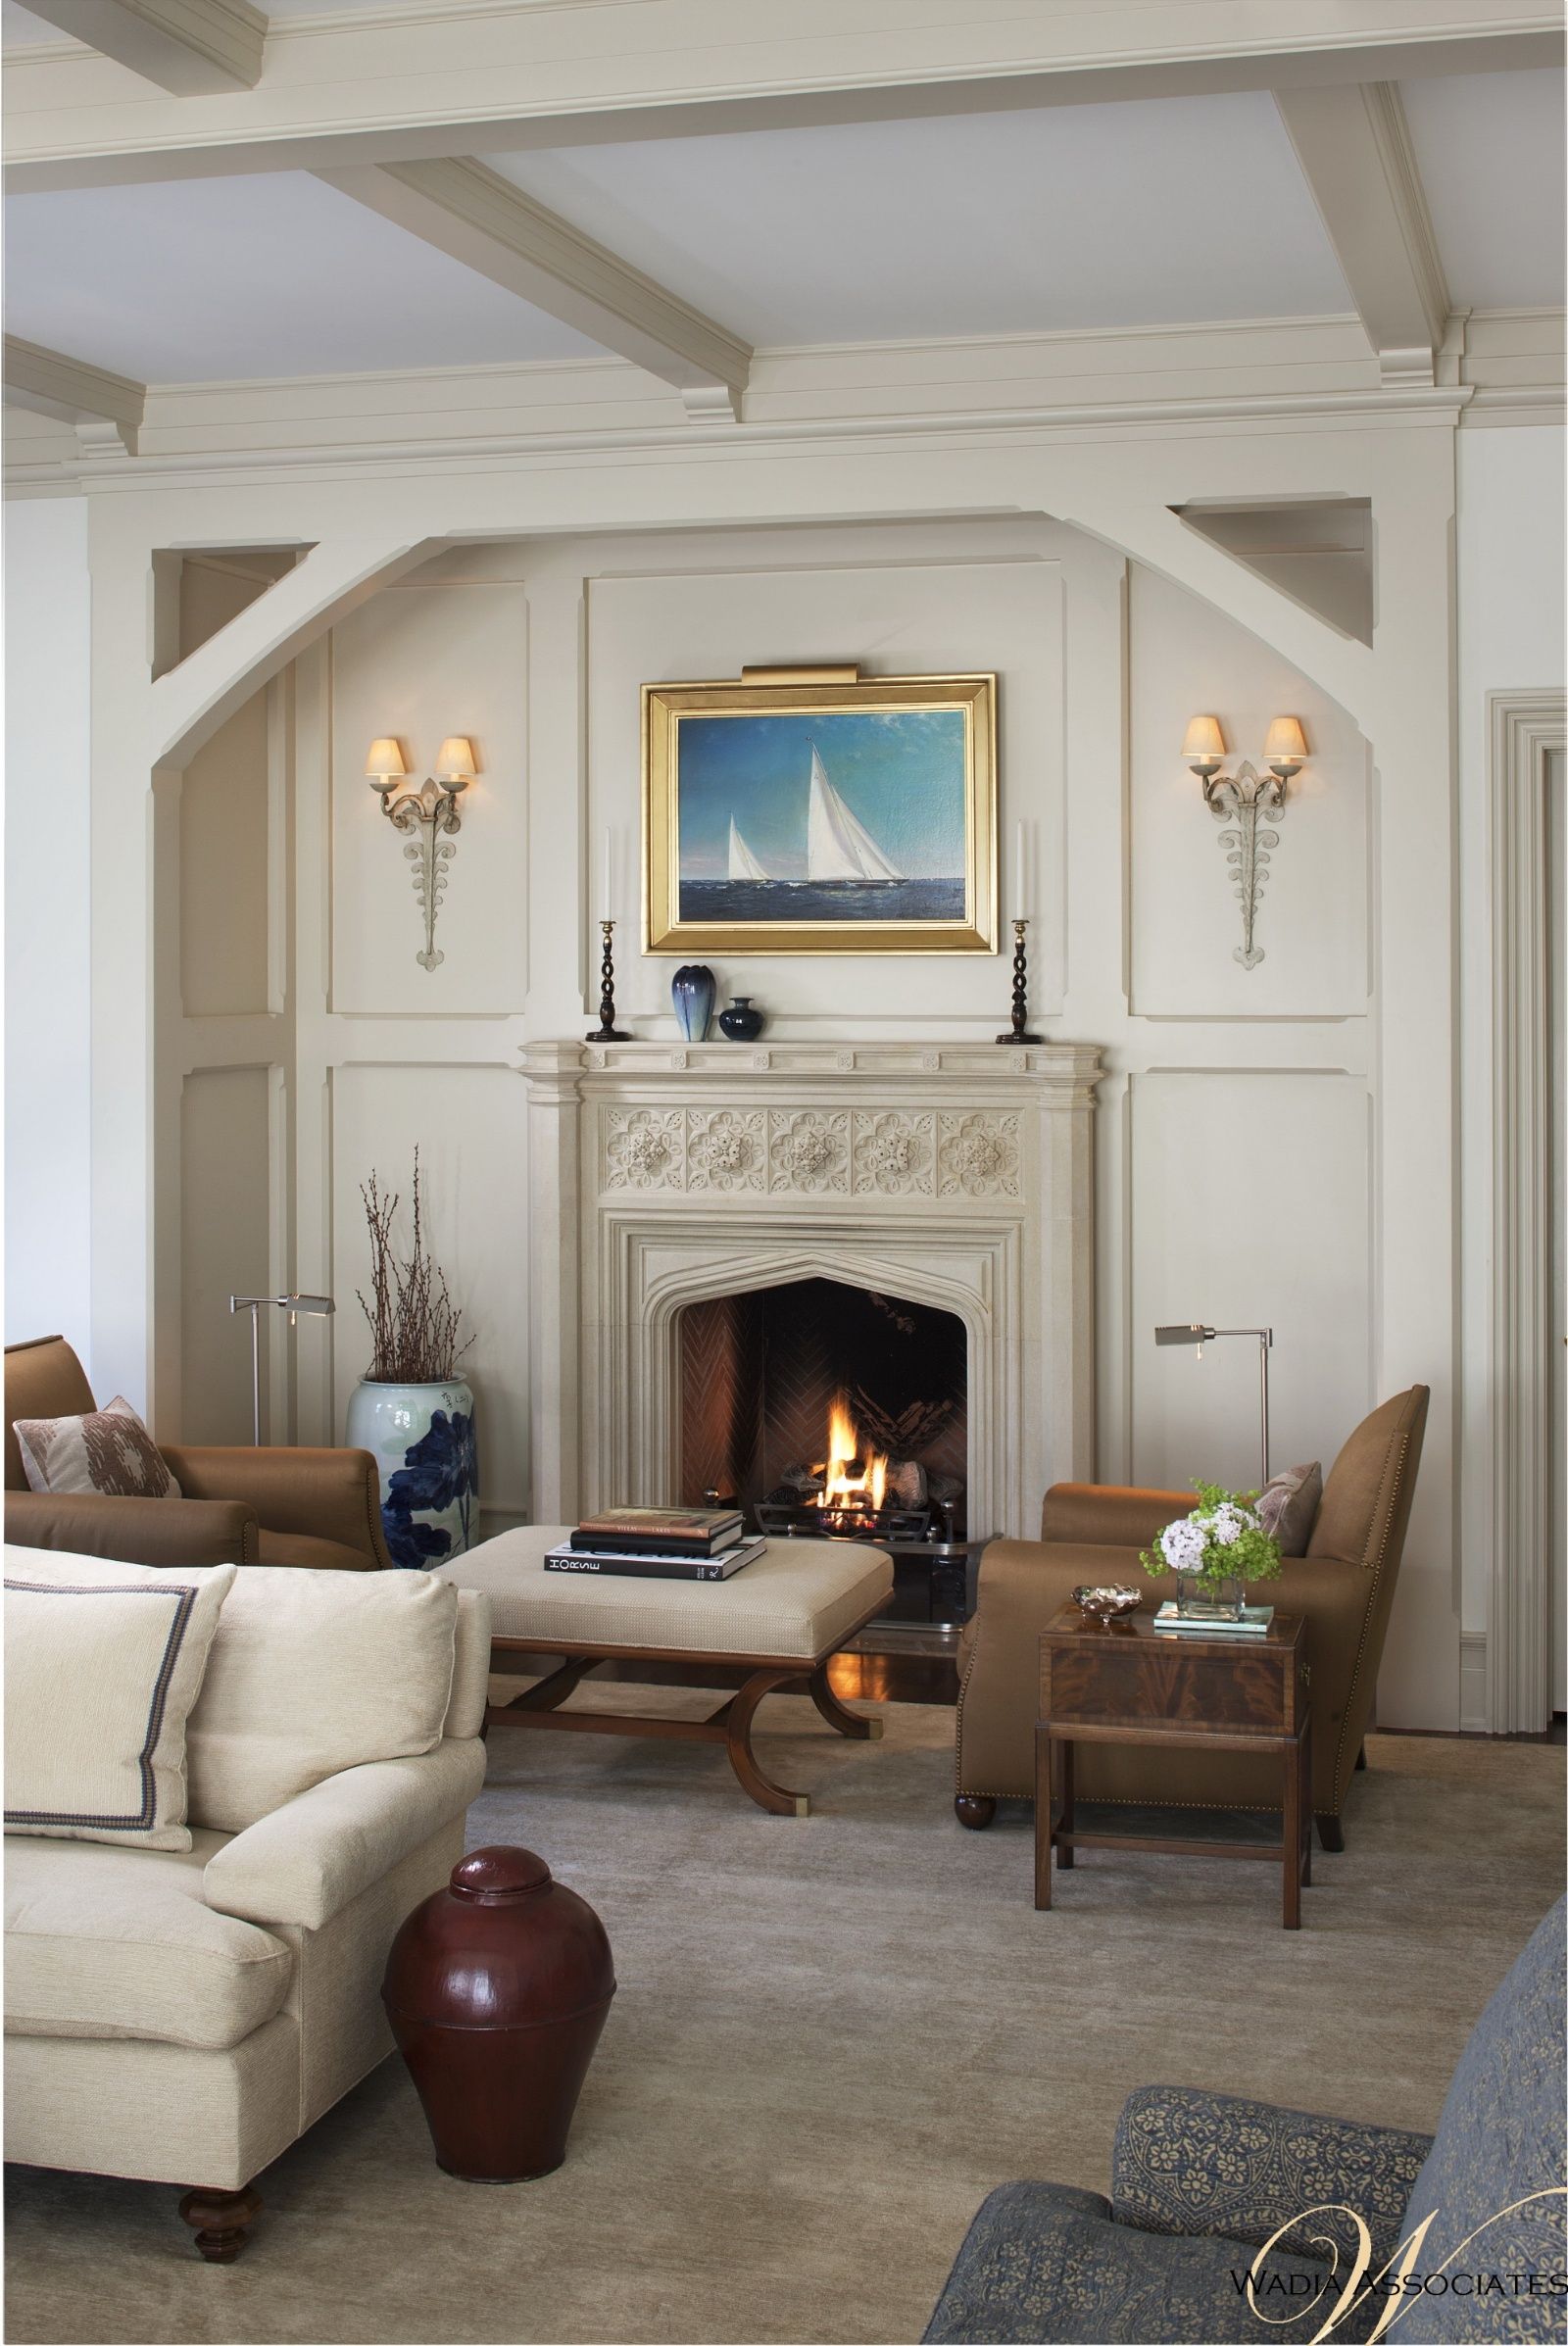 Tudor Fireplace Beautiful 65 Inspiring Fireplace Ideas to Keep You Warm